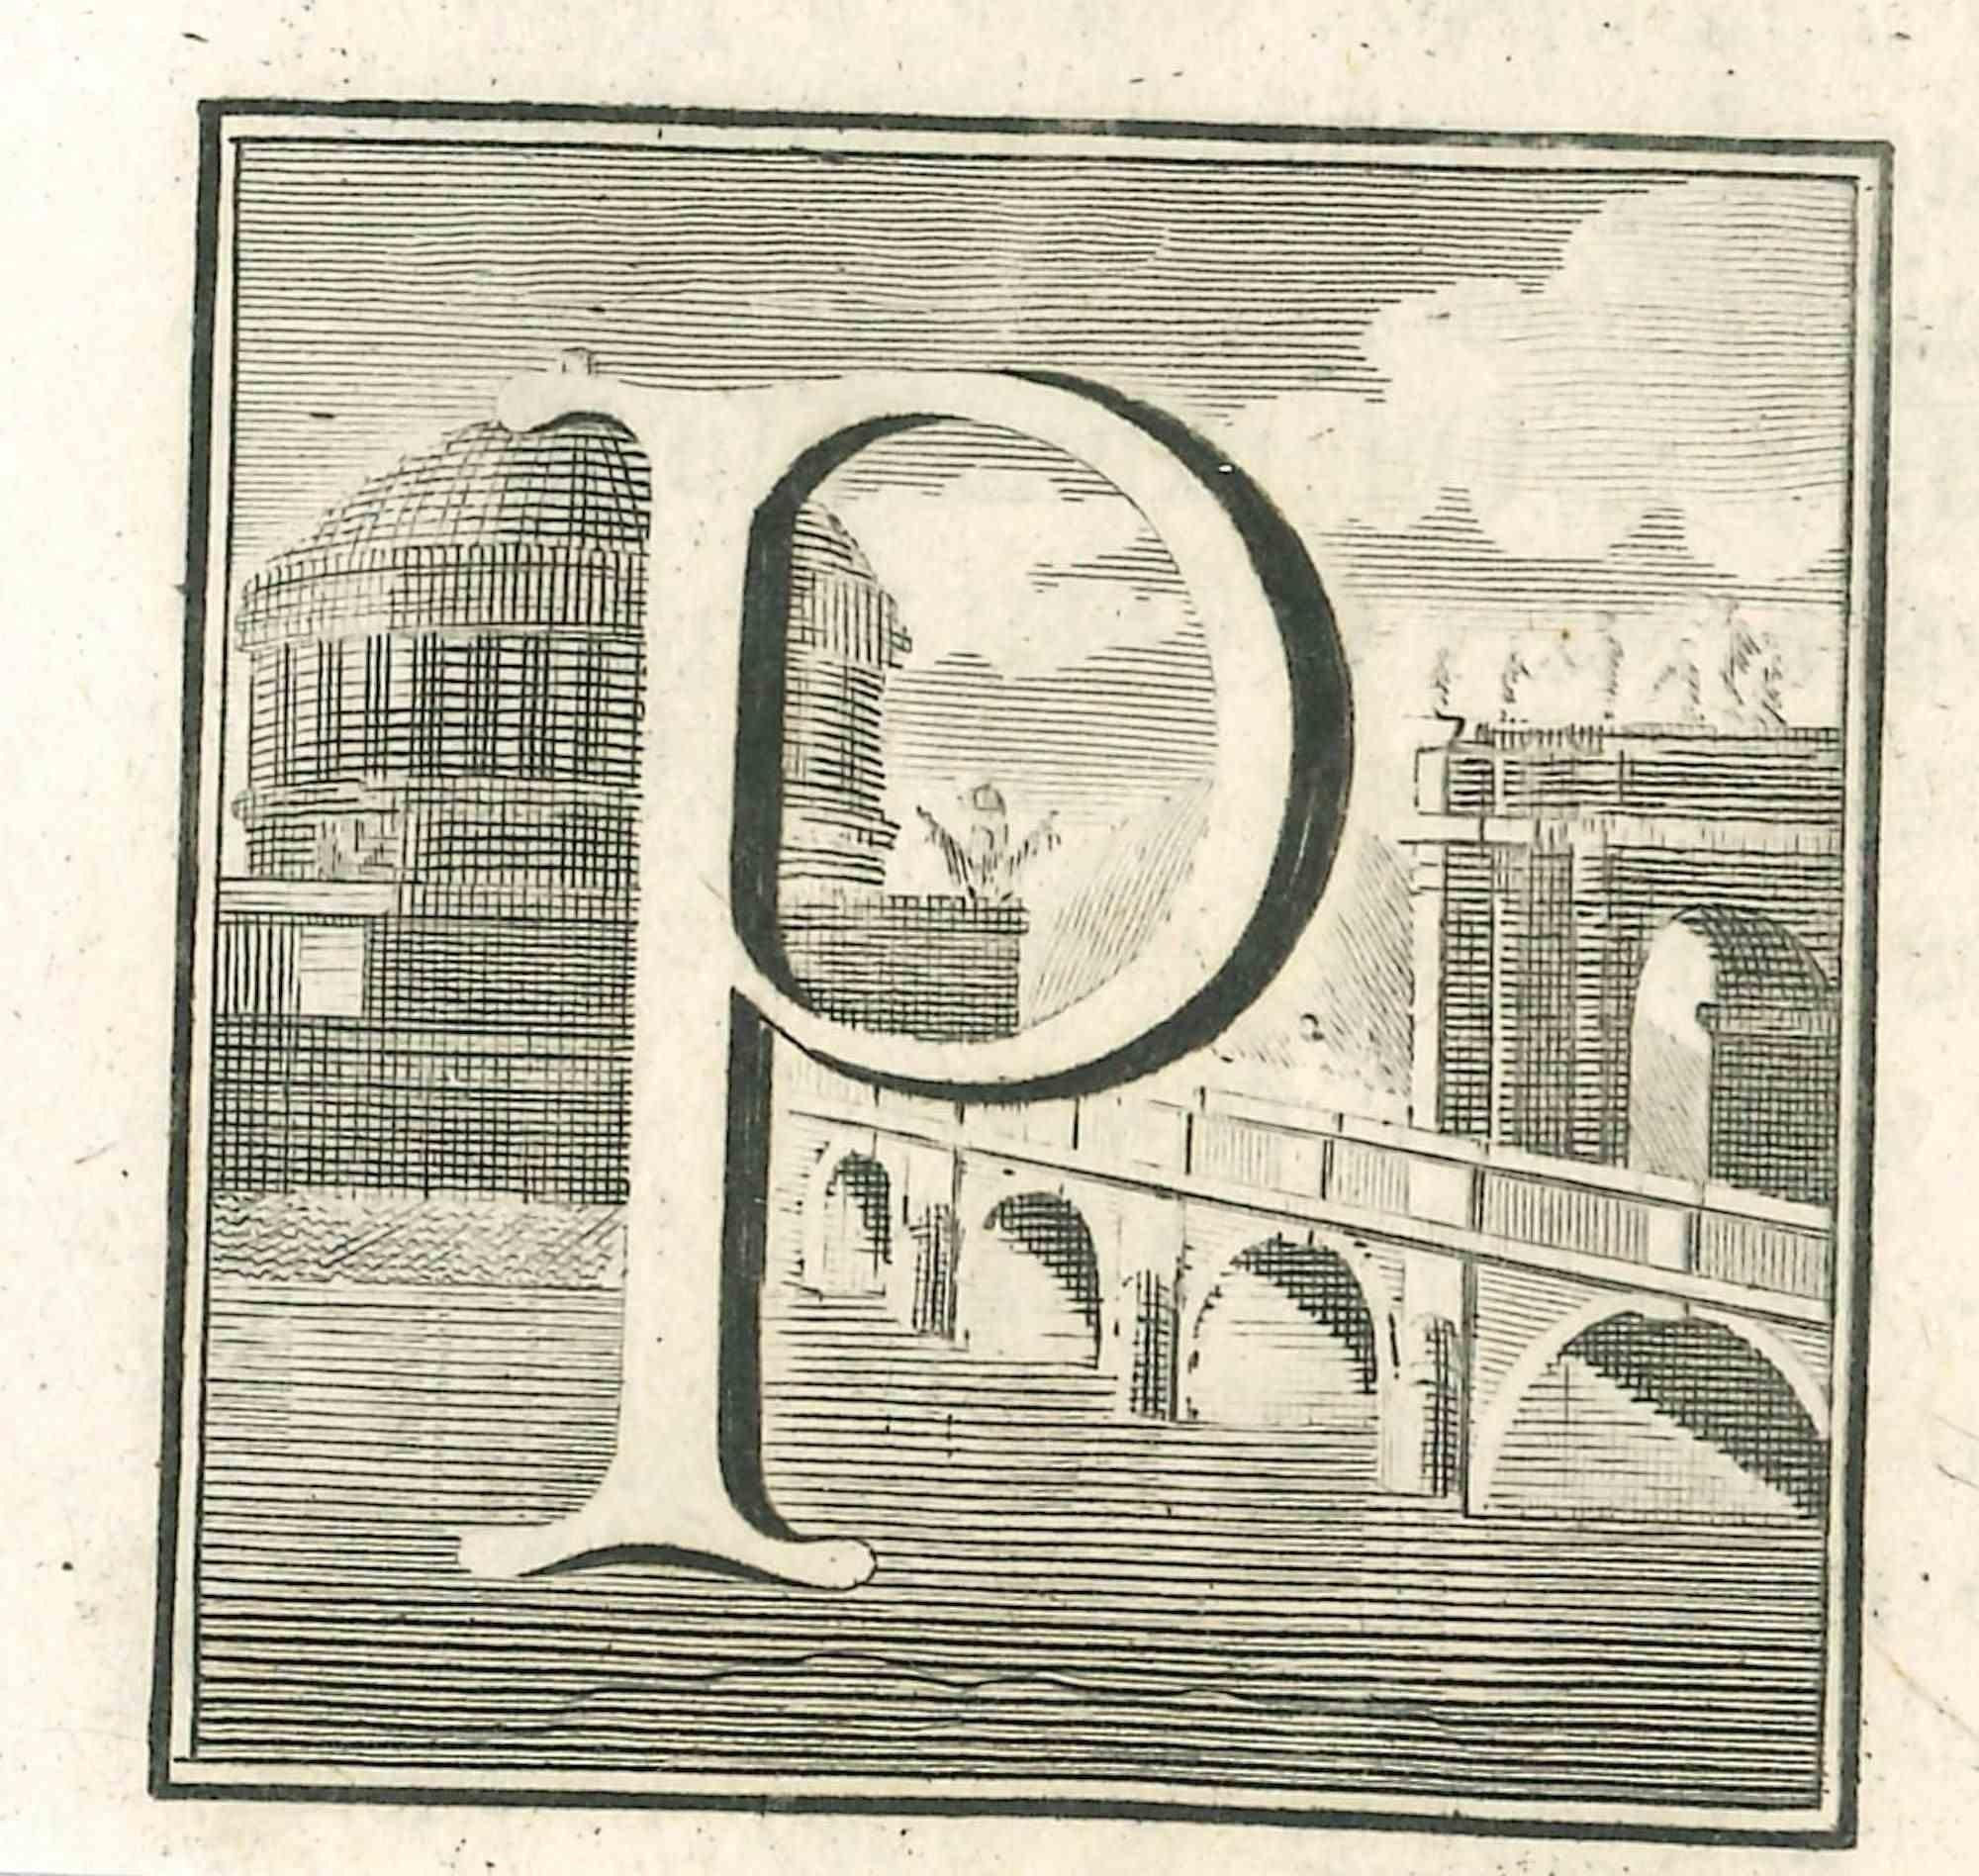 Lettre de l'alphabet P,  de la série "Antiquités d'Herculanum", est une gravure sur papier réalisée par Luigi Vanvitelli au 18ème siècle.

Bon état avec de légers plis.

La gravure appartient à la suite d'estampes "Antiquités d'Herculanum exposées"